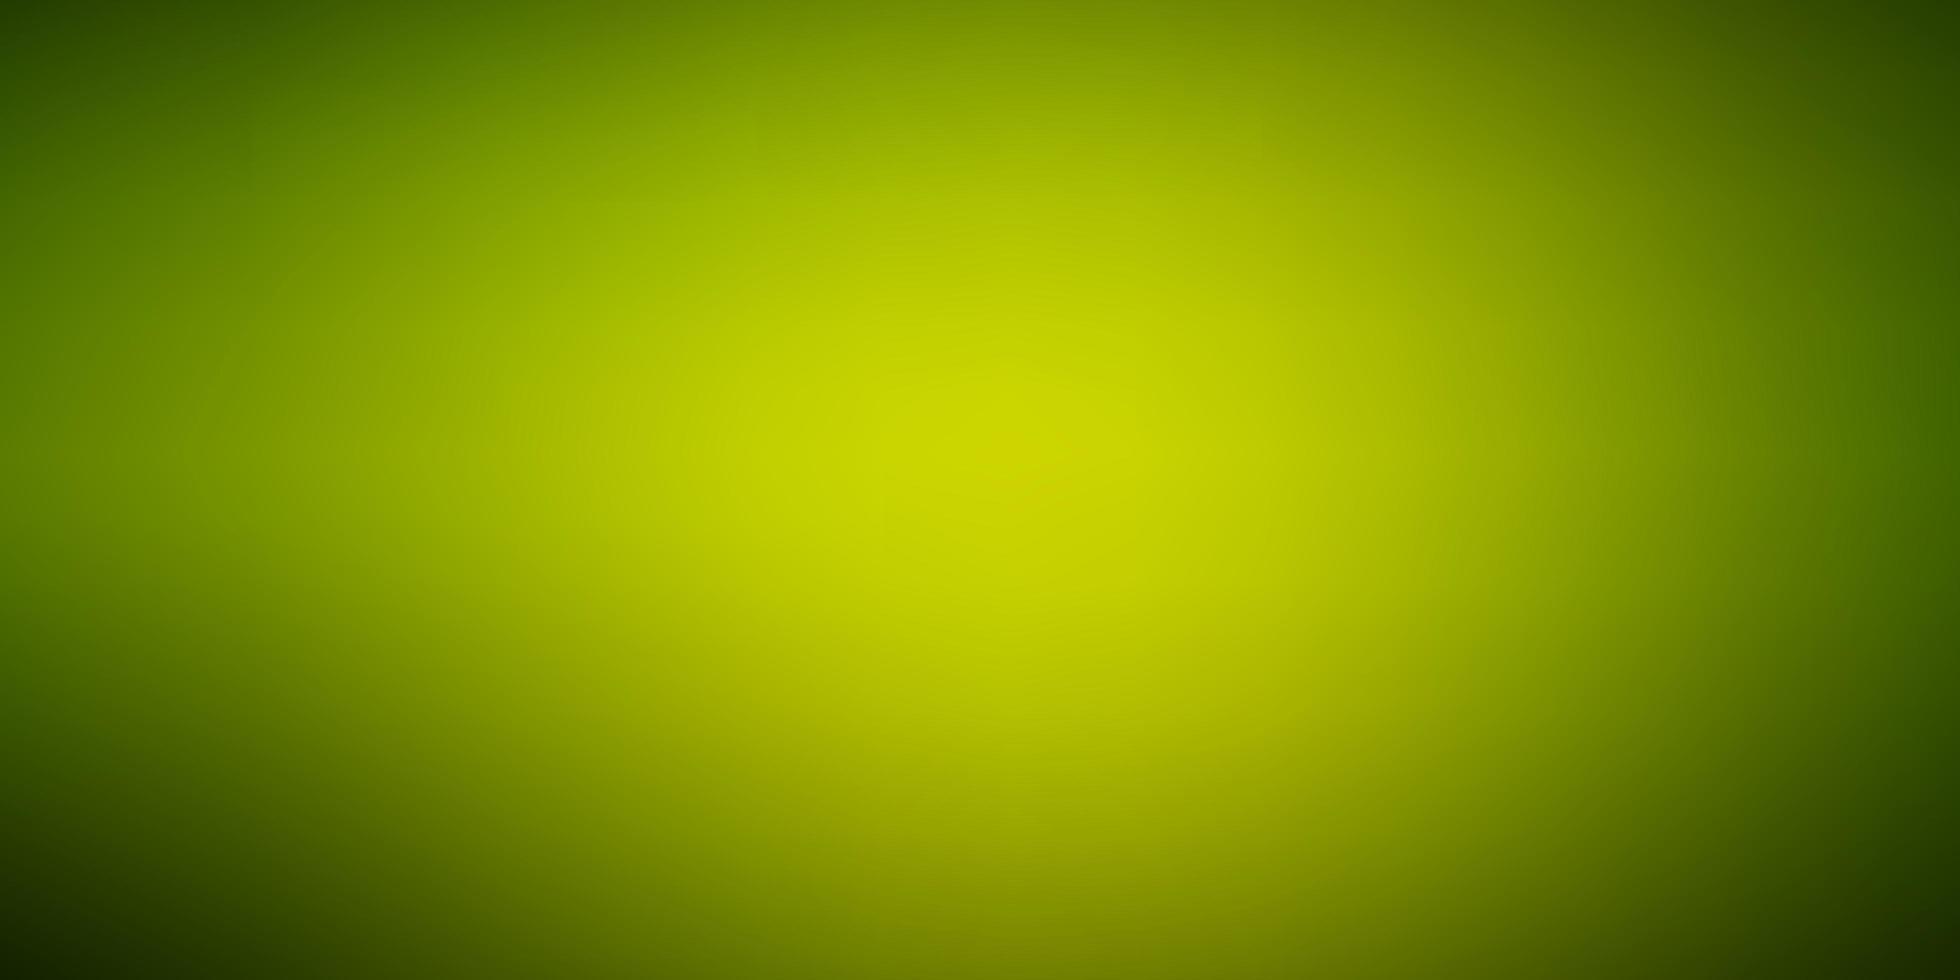 modelo brilhante abstrato do vetor verde escuro e amarelo.